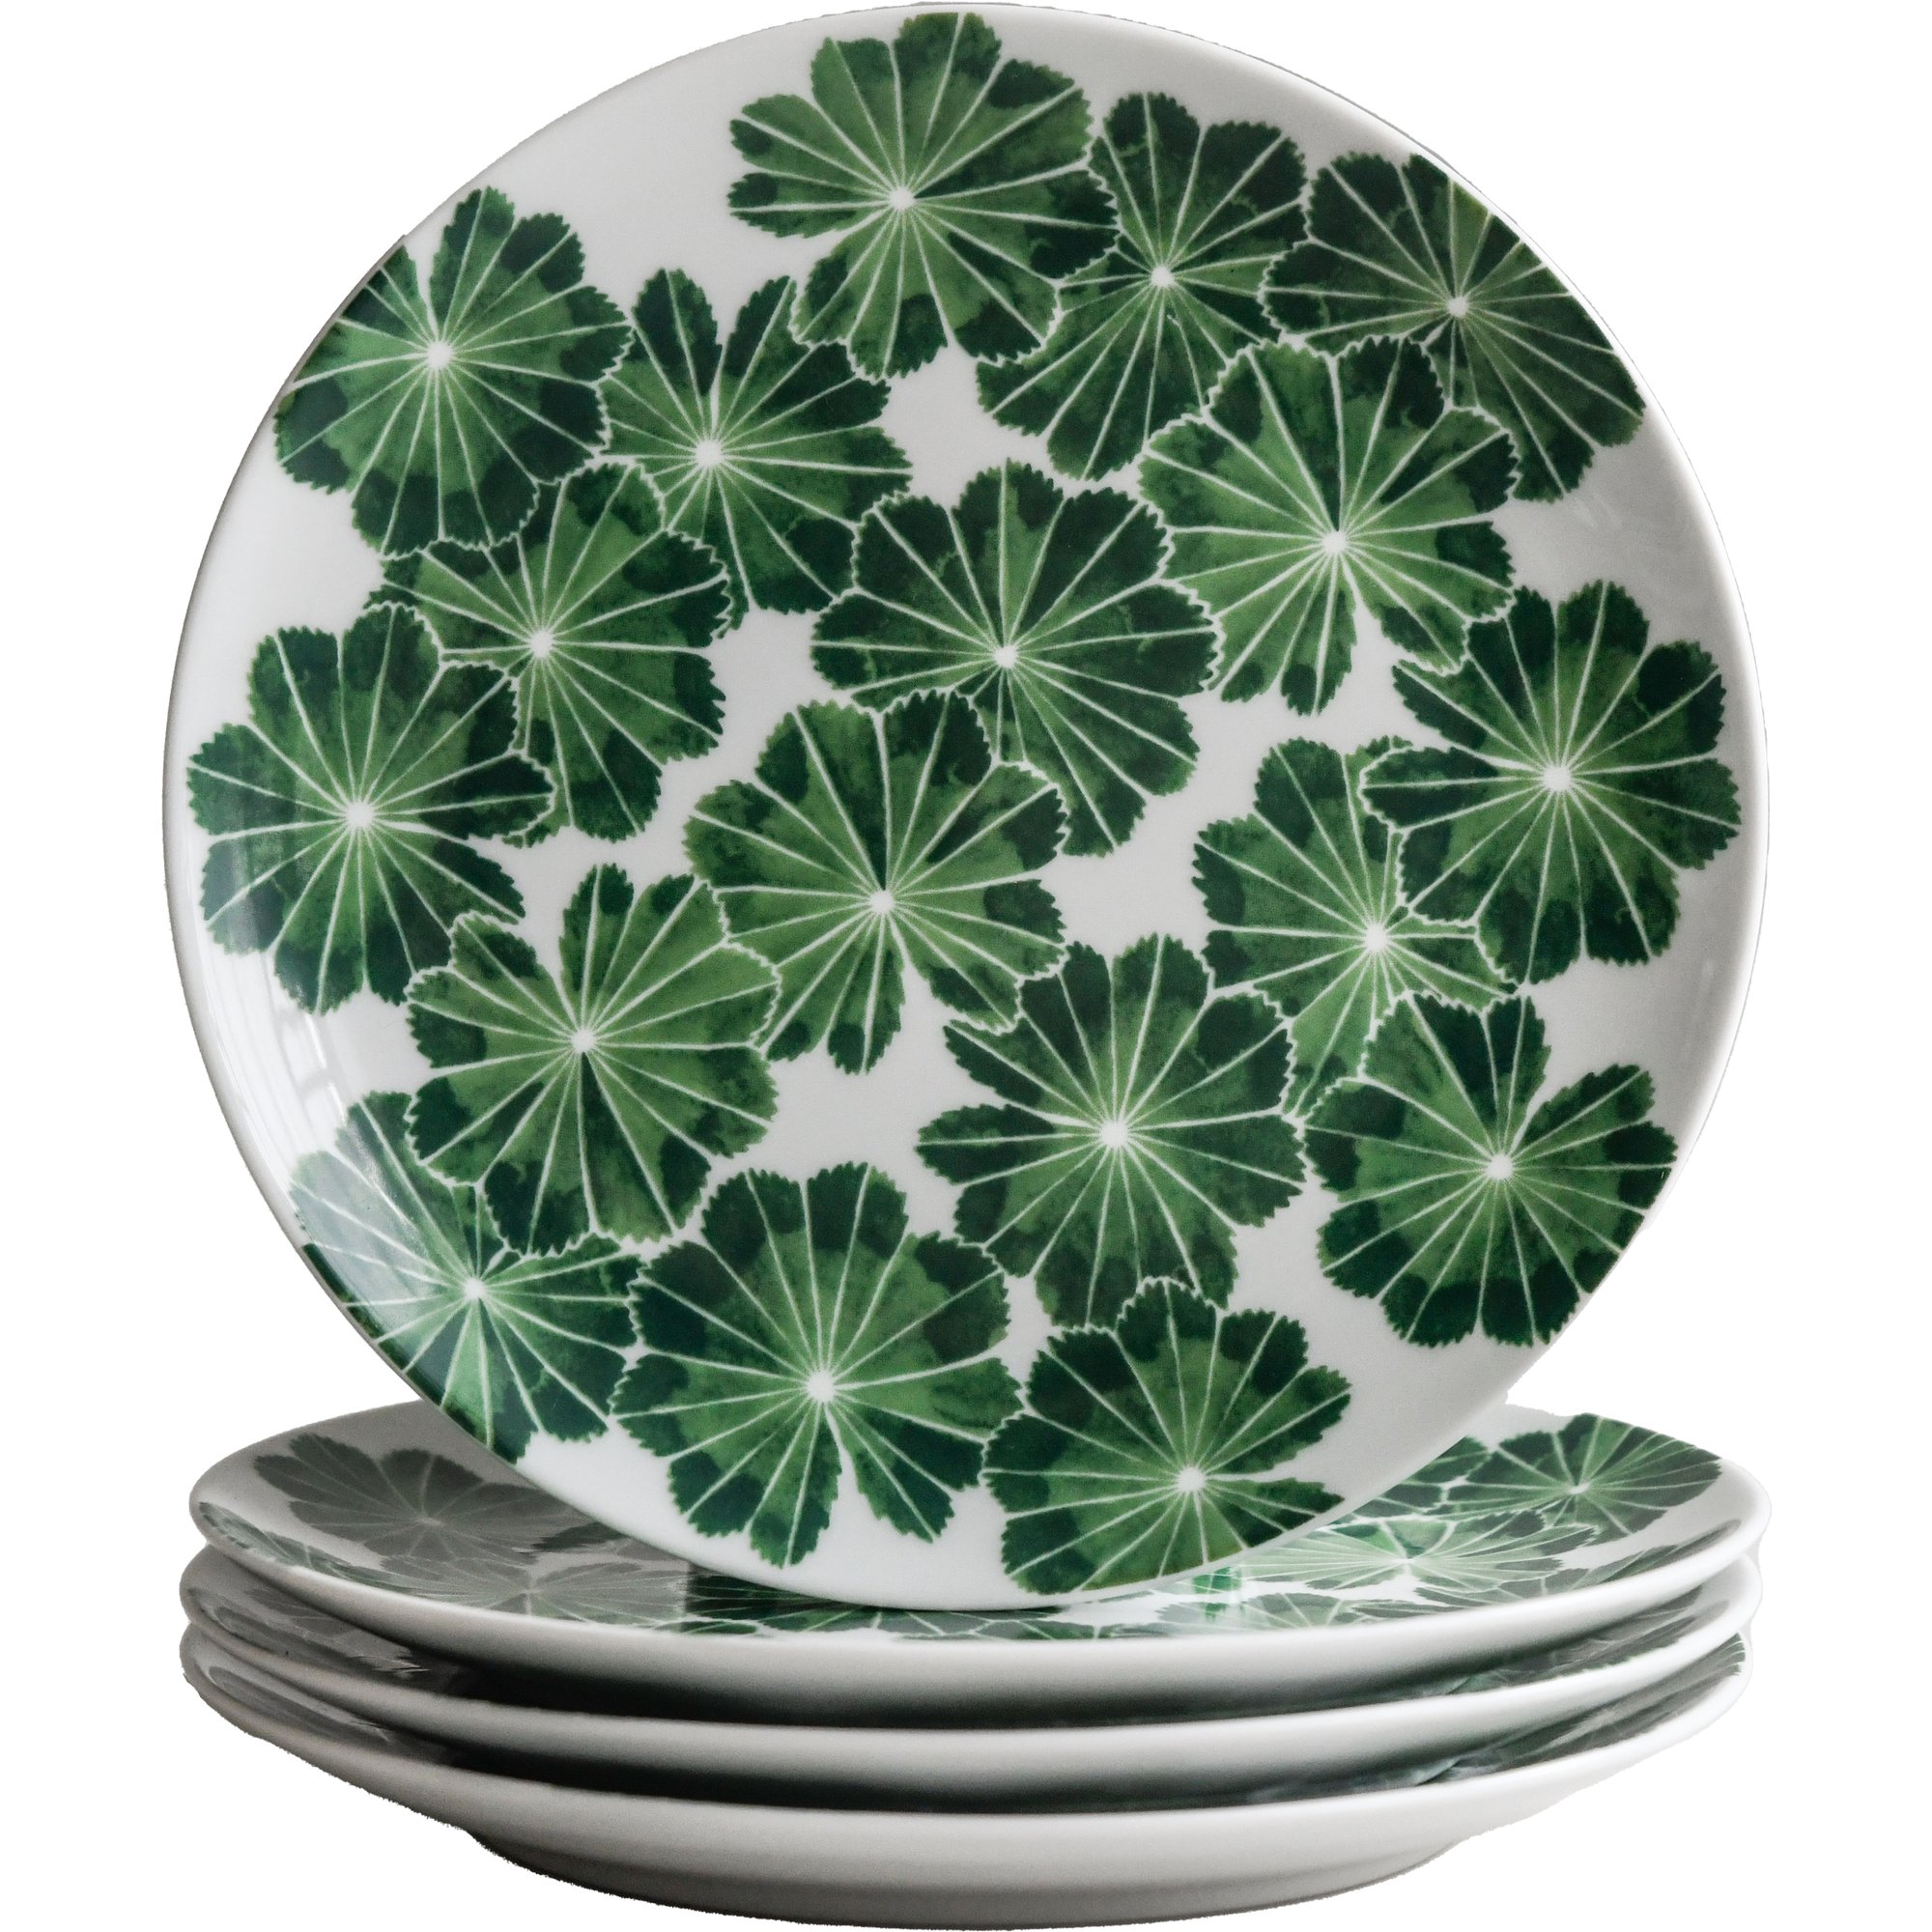 Götefors Porslin Daggkåpa tallerken, 21 cm, grøn, 4-pak